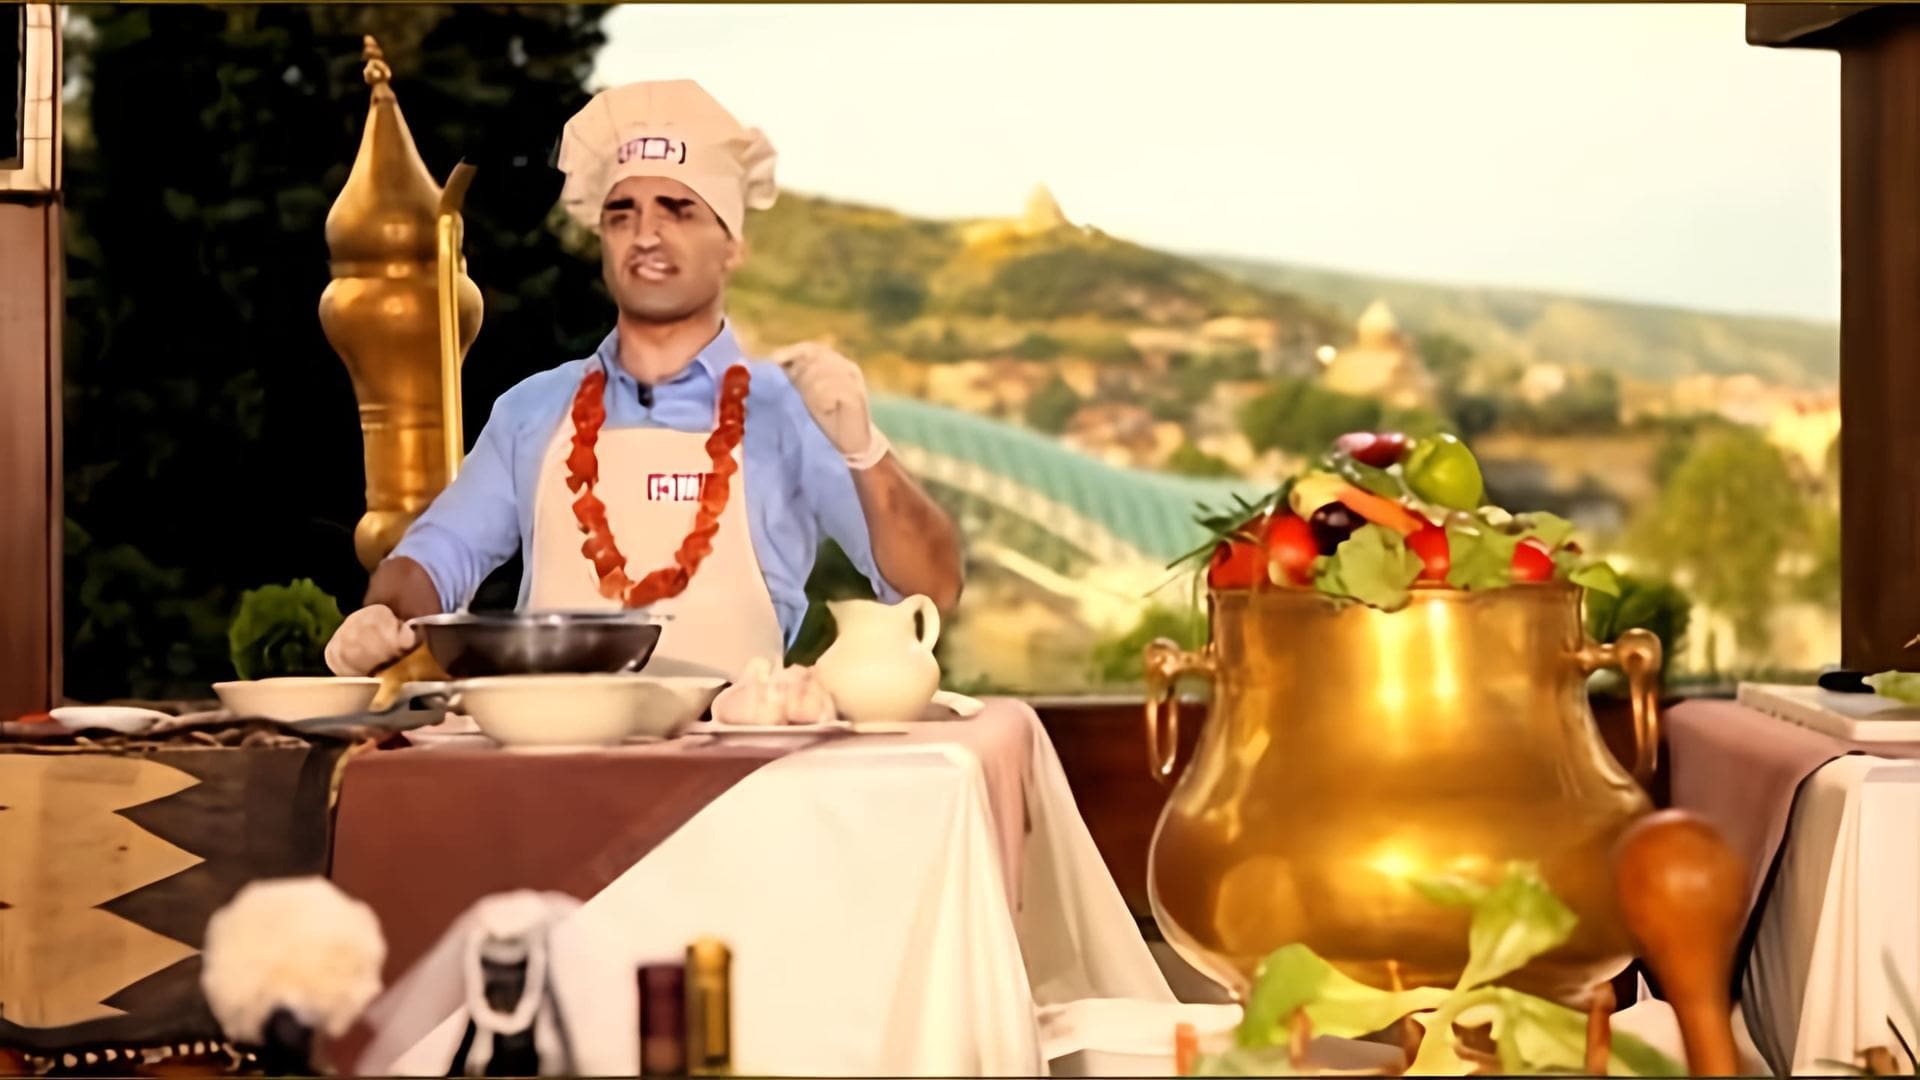 "Смачно-Smachno, баже" - это видео-ролик, который представляет собой обзор на различные блюда и кулинарные рецепты